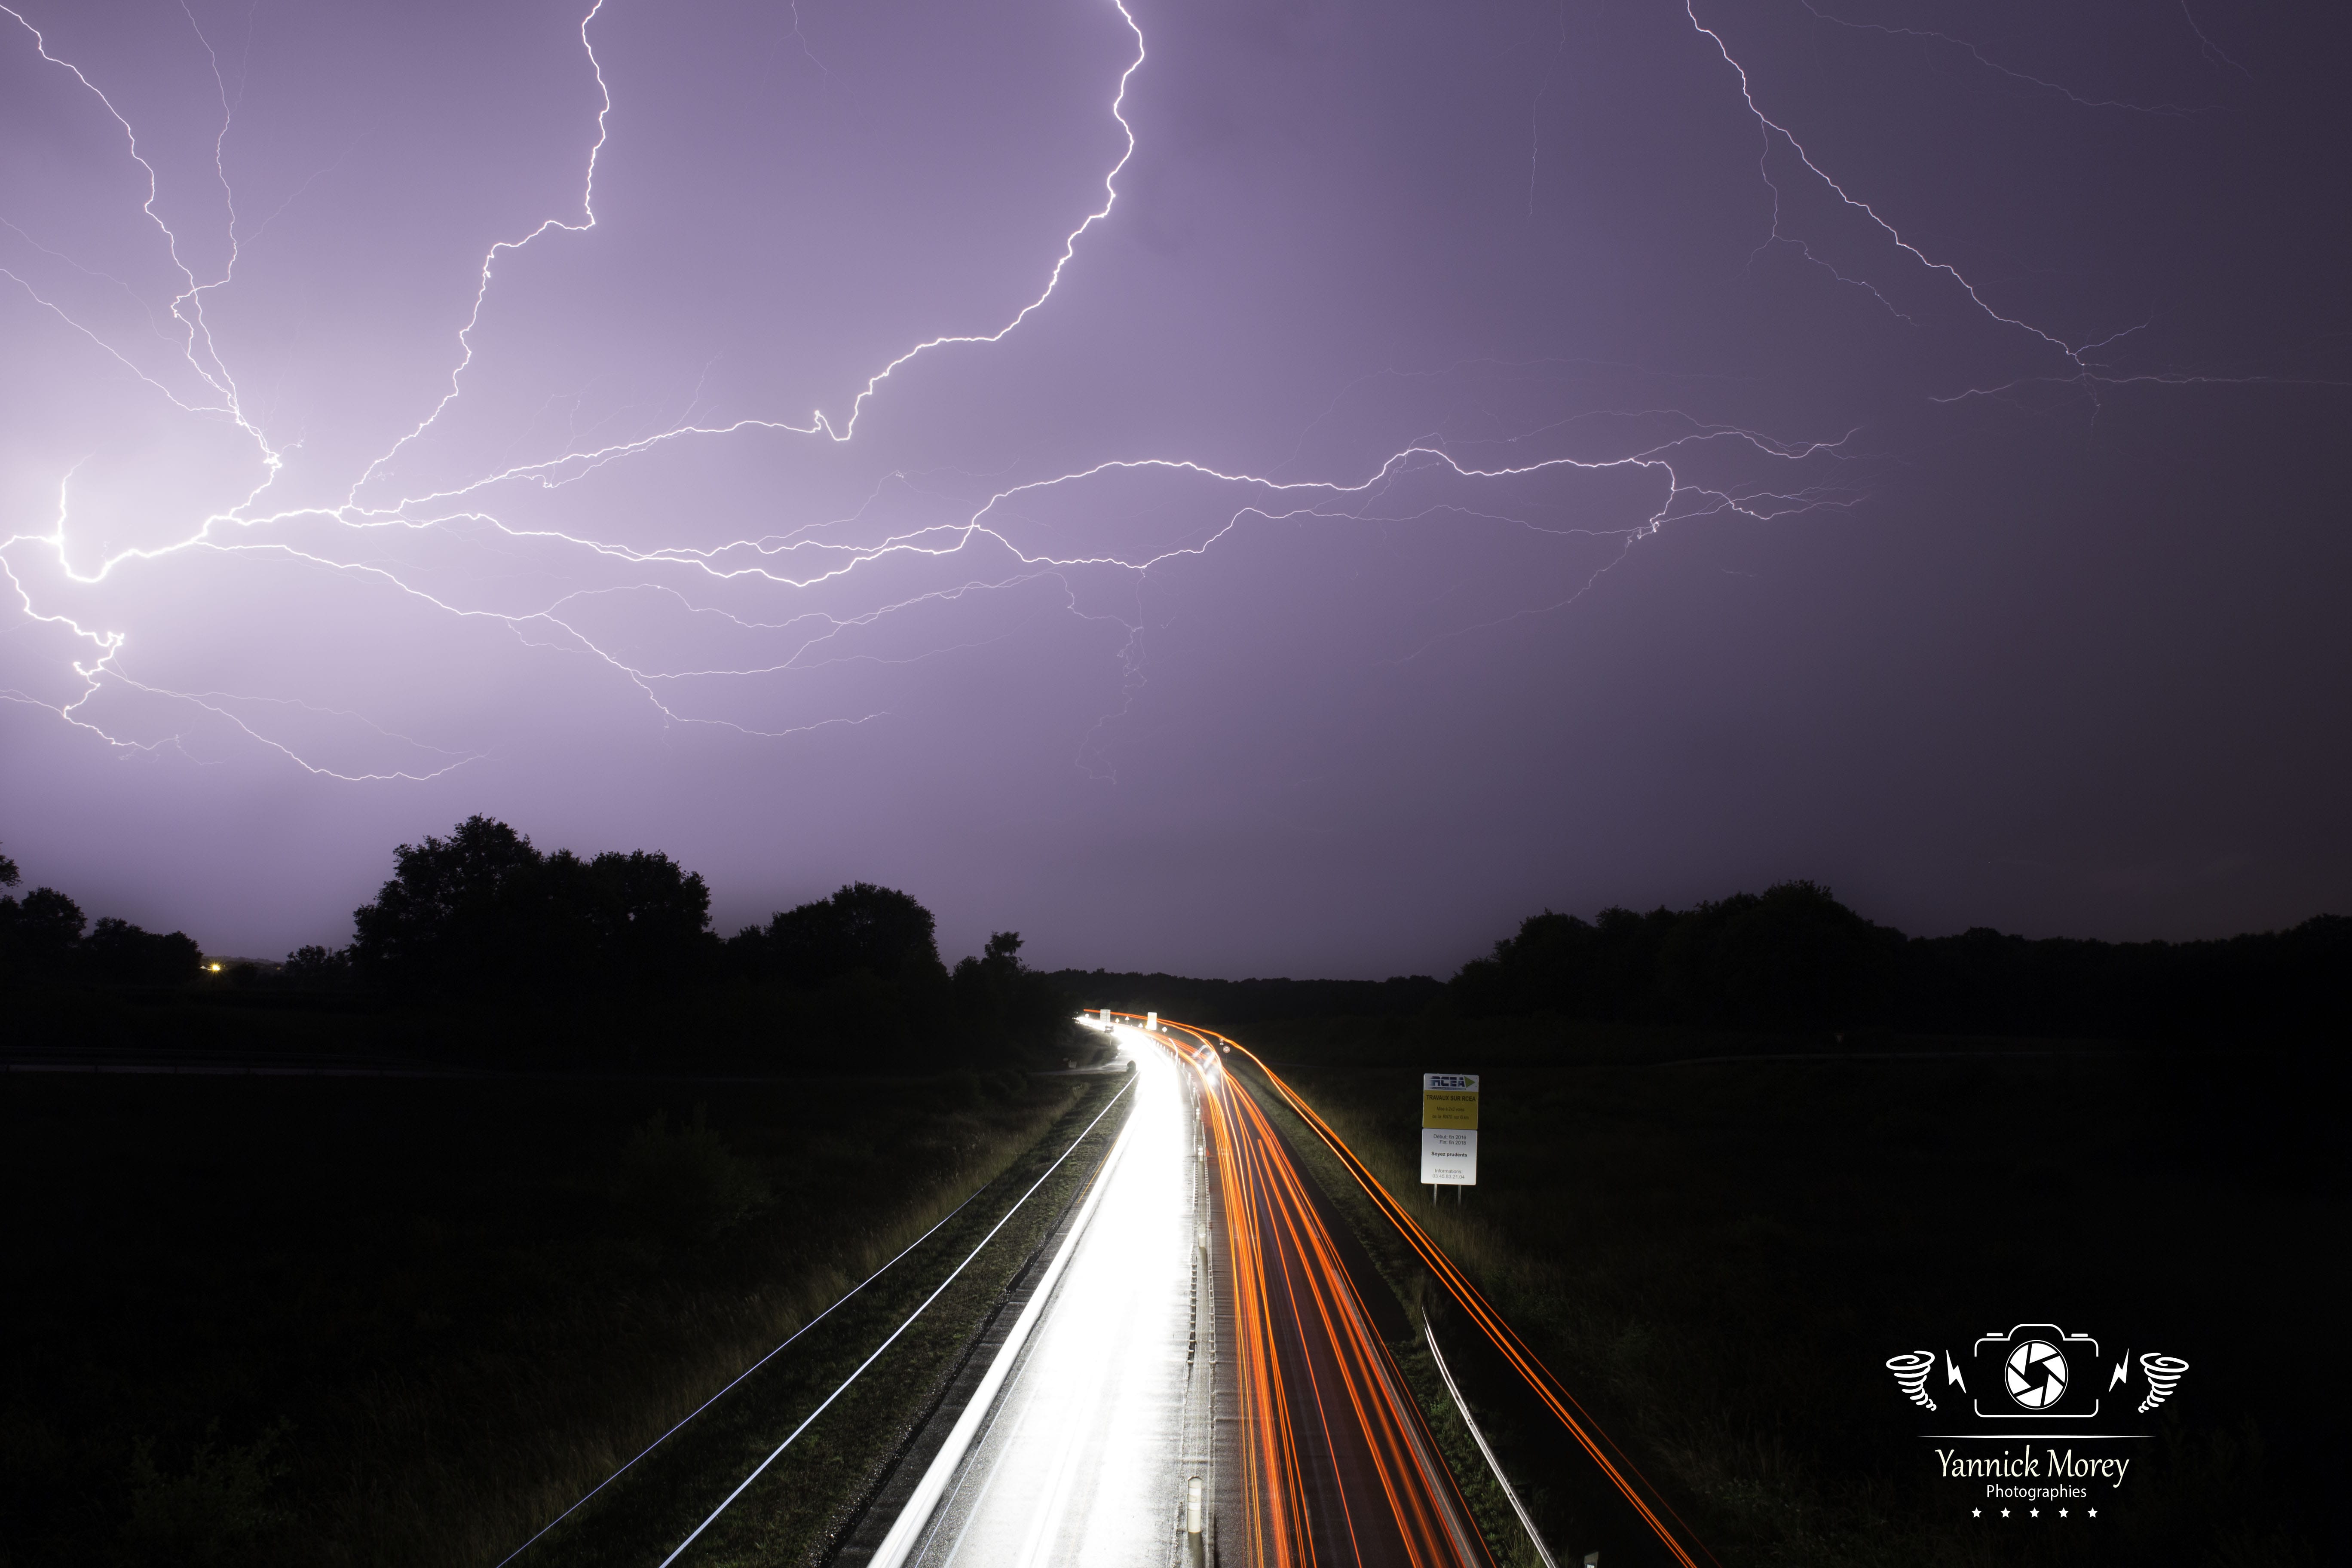 Spider (éclair rampant) au dessus de la RCEA sur un gros système convectif mourant  en arrivant sur l'Ouest du département de la Saône et Loire - Près de Montceau-les-Mines - 14/06/2017 01:51 - Yannick MOREY